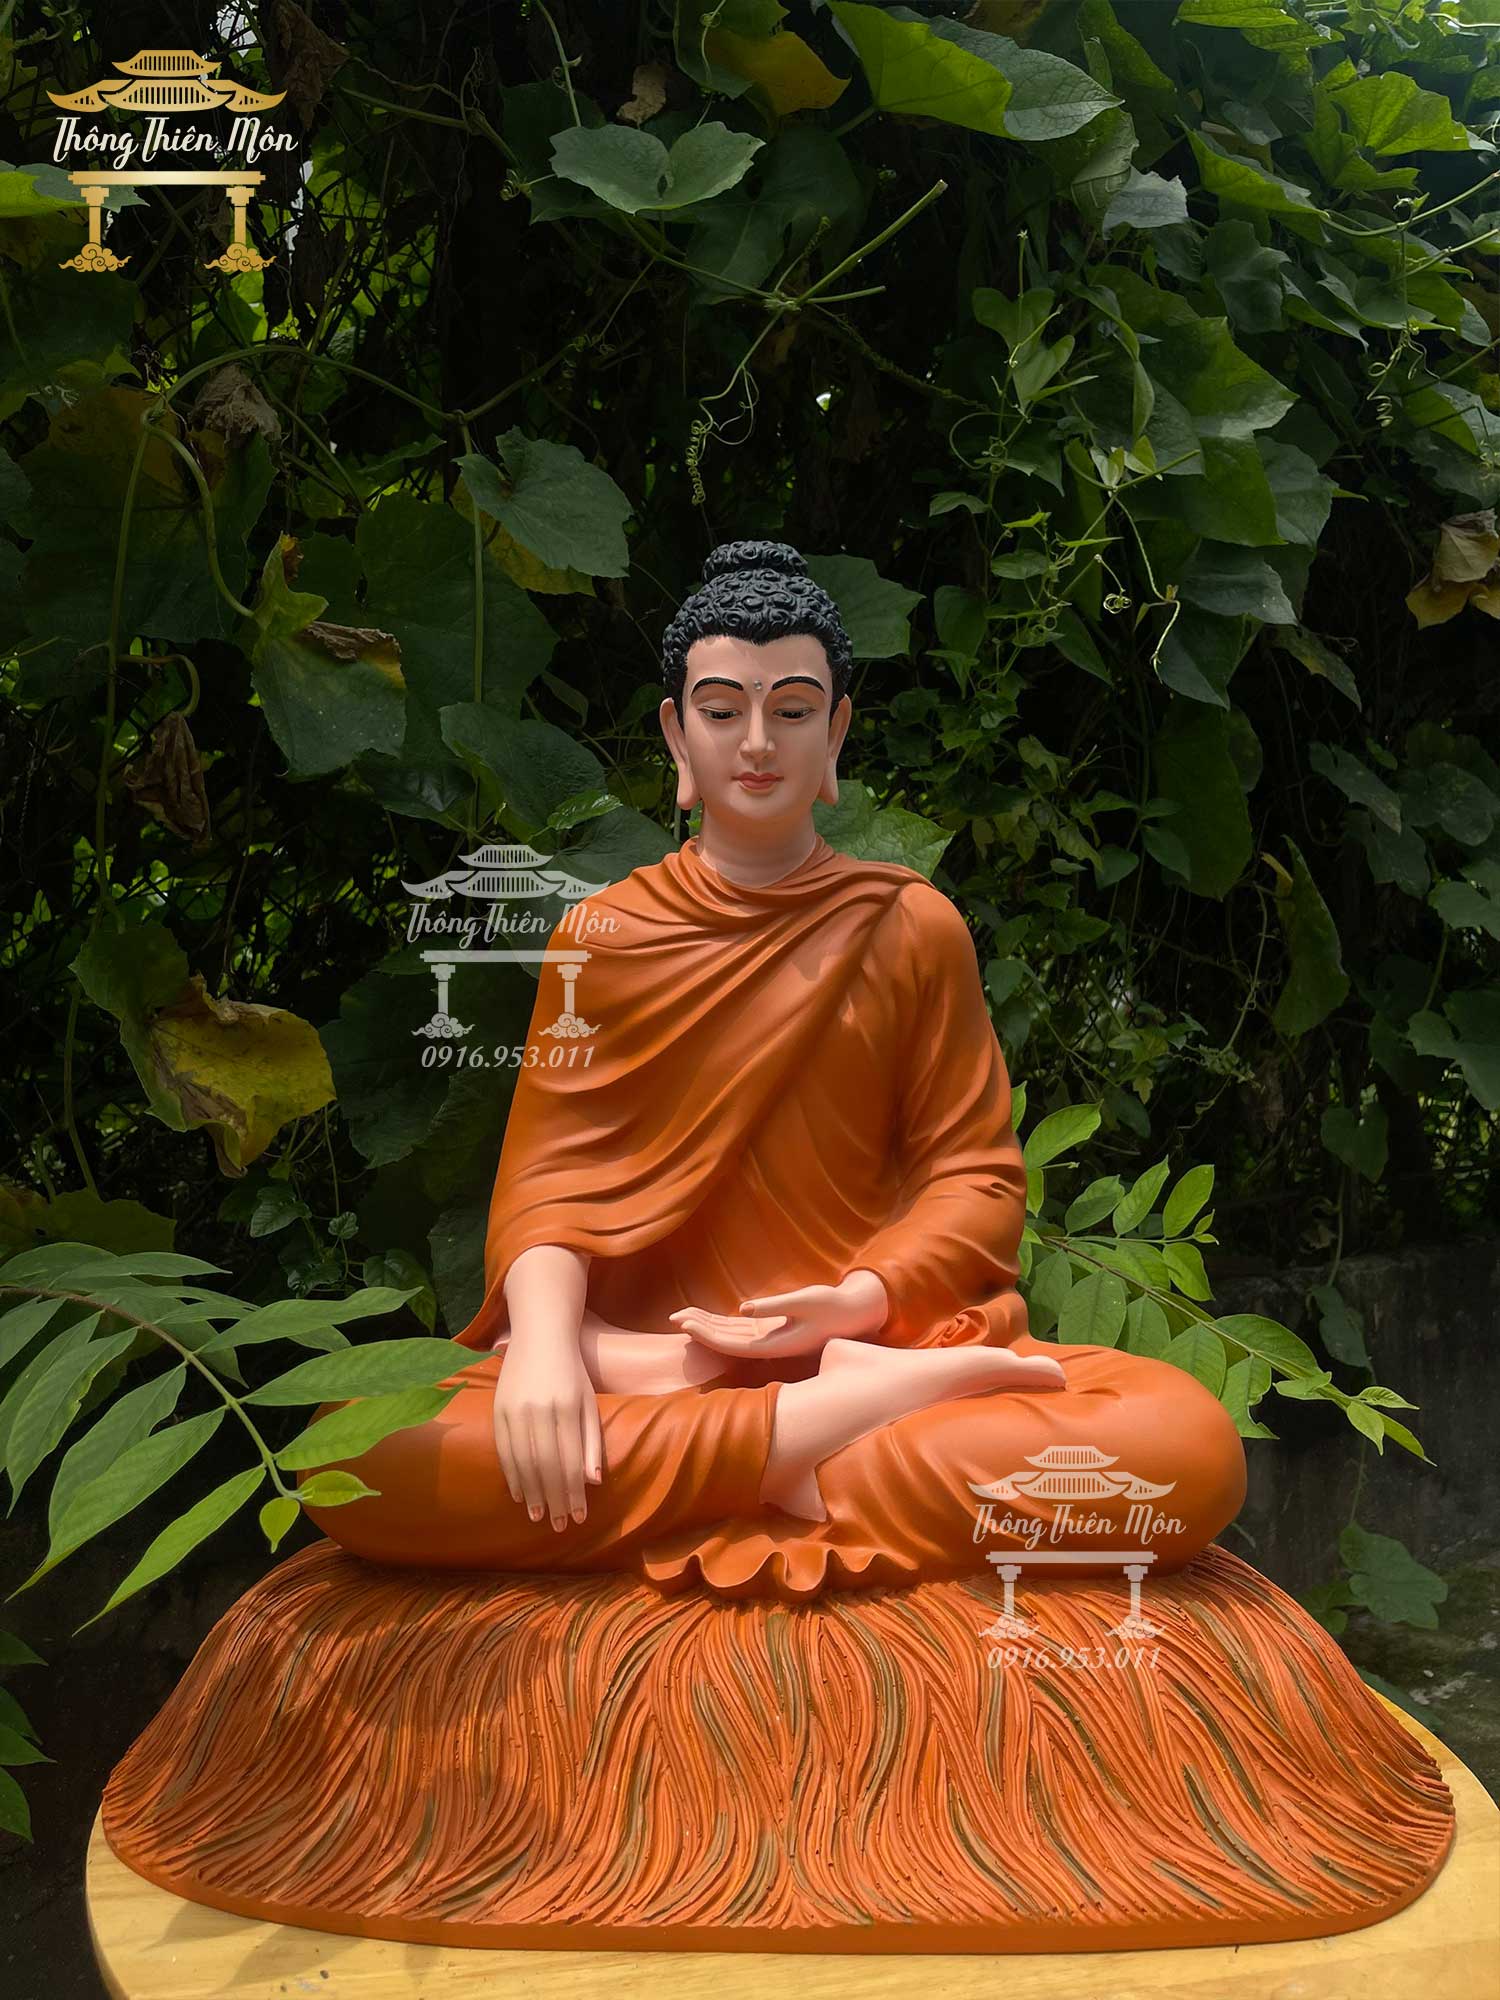 Tôn tượng Bổn Sư Thích Ca chế tác bởi Xưởng tượng Phật - Thông Thiên Môn